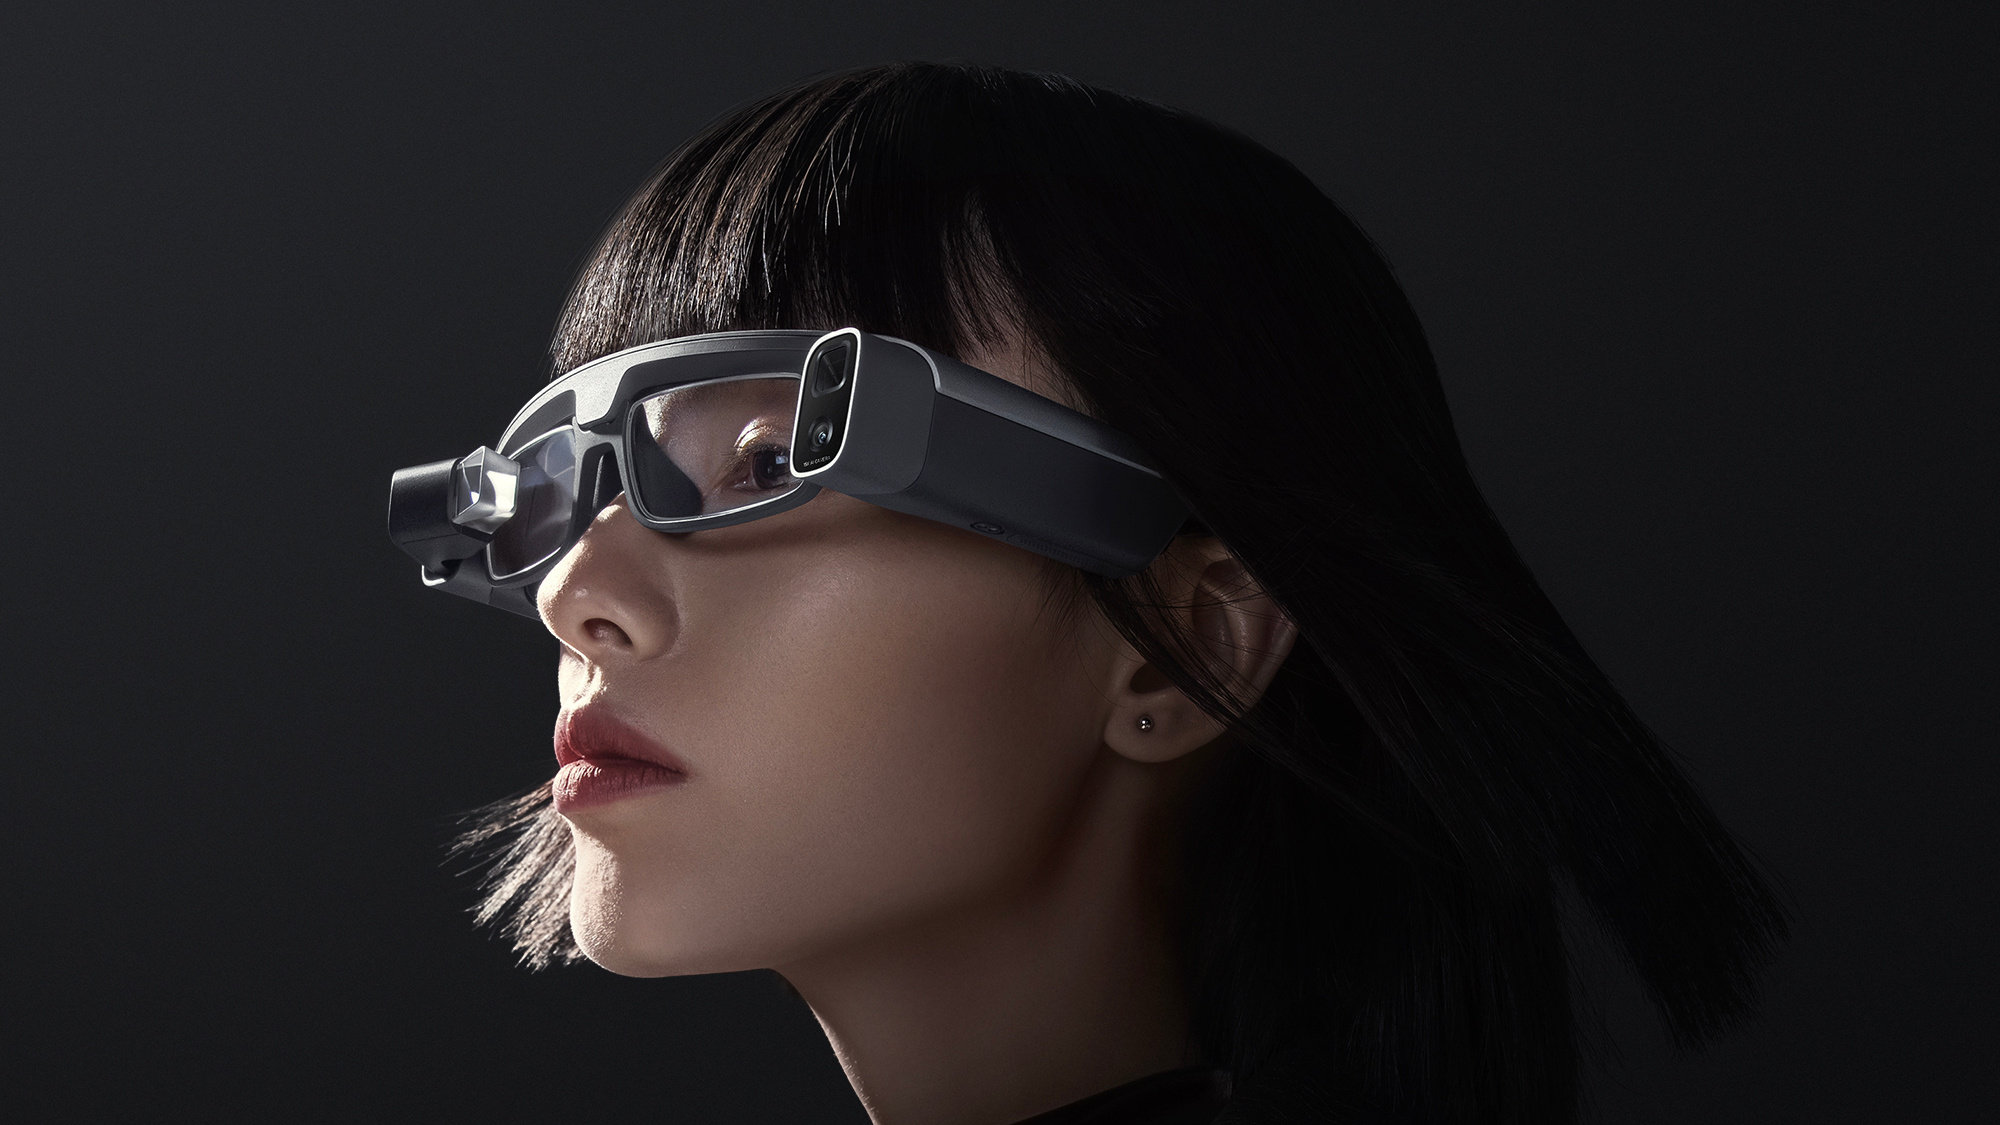 Xiaomi de olho no futuro: gigante chinesa lança seus óculos inéditos de realidade aumentada